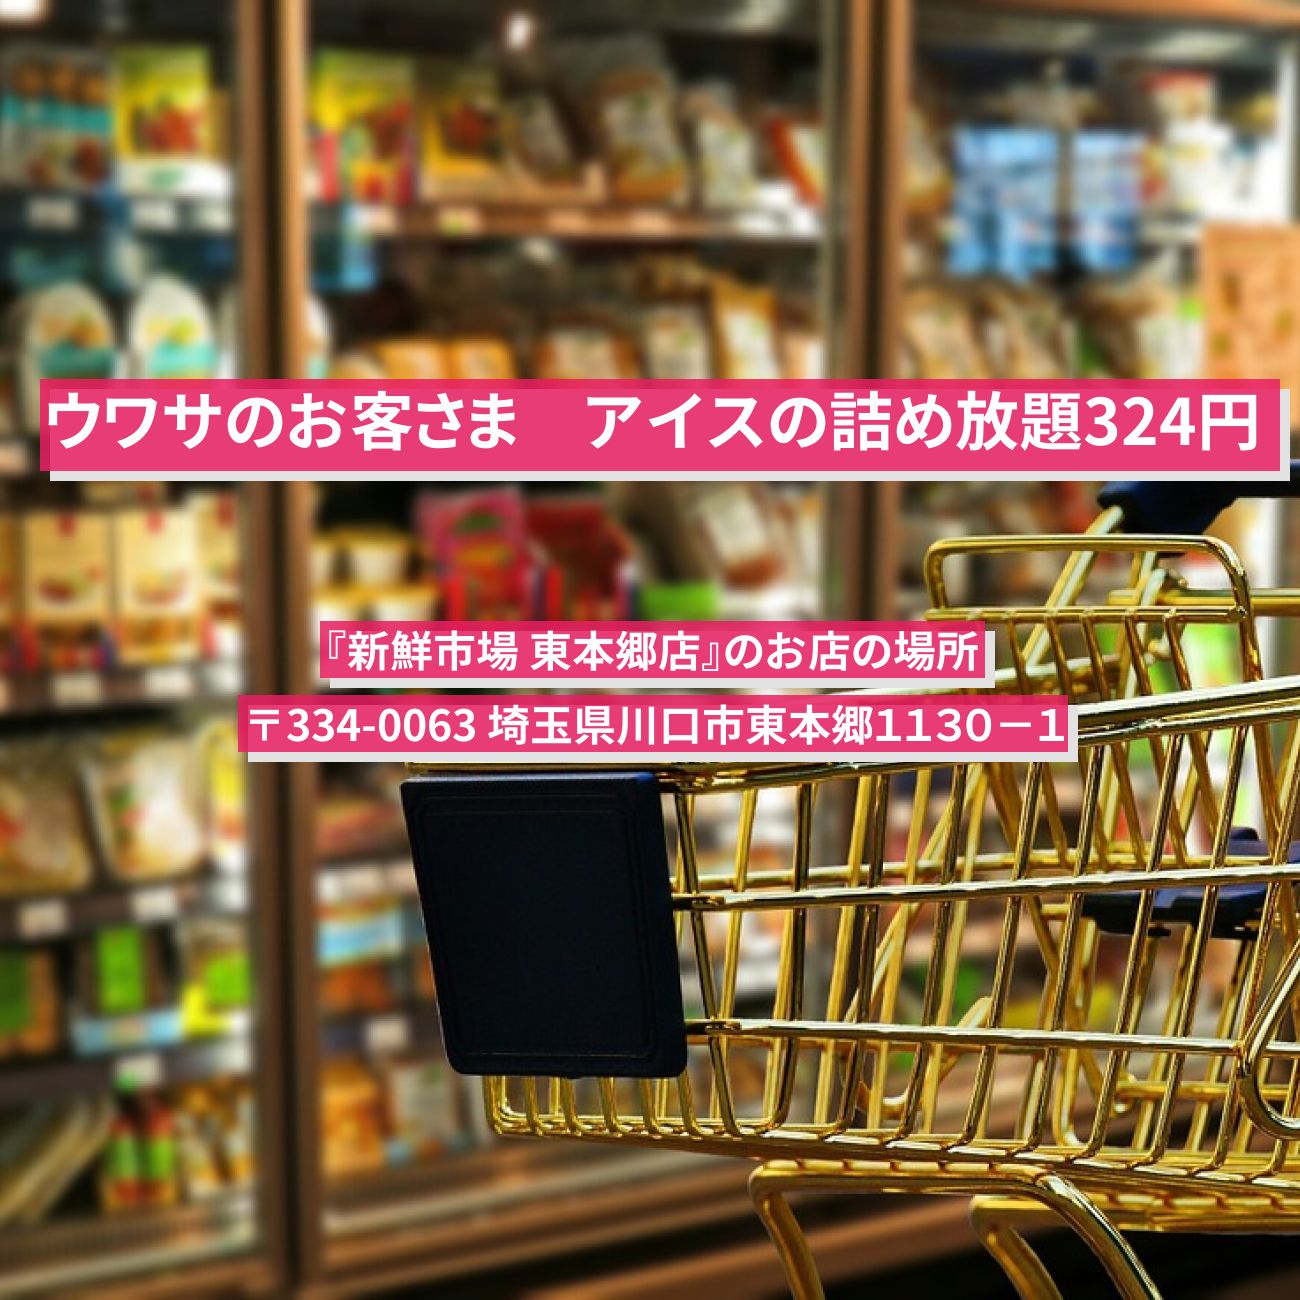 【ウワサのお客さま】アイスの詰め放題324円『新鮮市場 東本郷店』のお店の場所